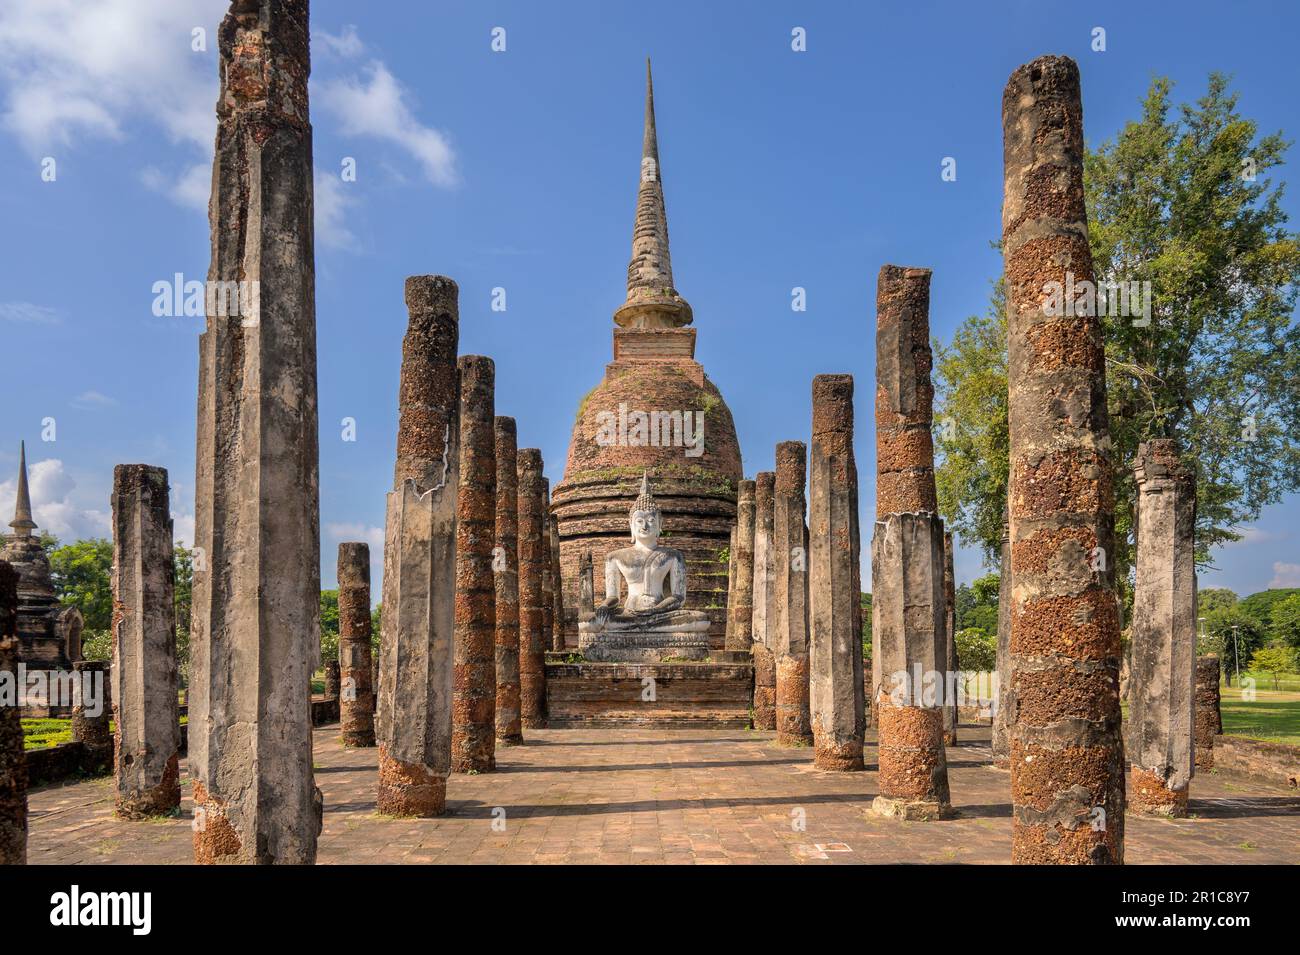 Wat sa si, ou Wat Sra Sri, est un complexe de temples bouddhistes (wat) dans le Parc historique de Sukhothai, province de Sukhothai dans la région nord de la Thaïlande Banque D'Images